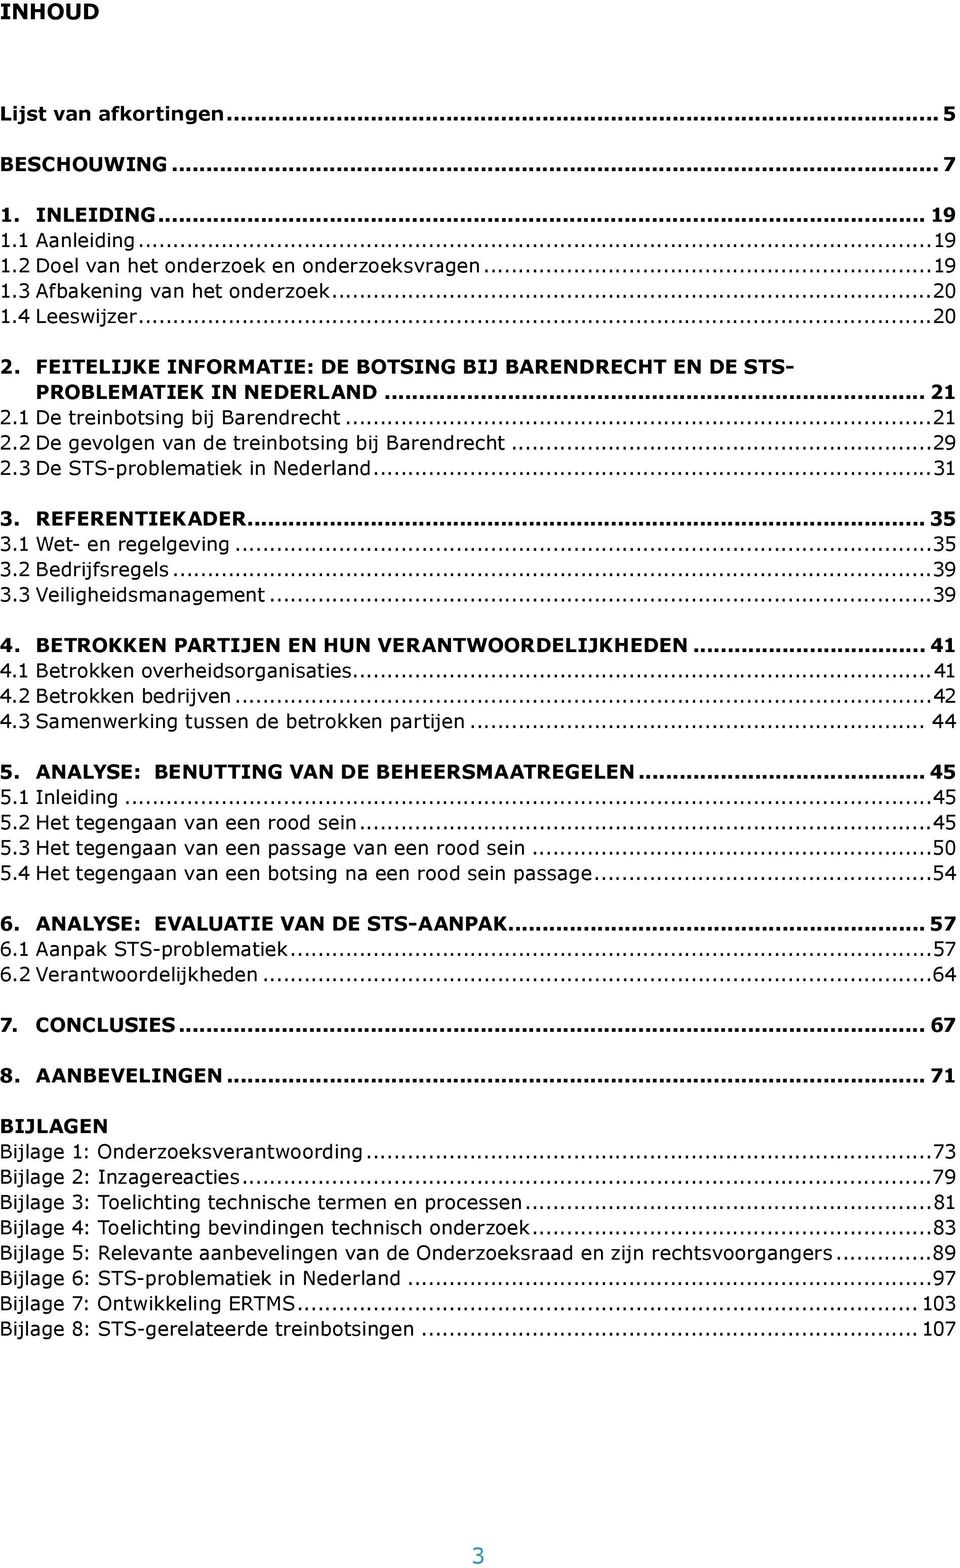 3 De STS-problematiek in Nederland...31 3. REFERENTIEKADER... 35 3.1 Wet- en regelgeving...35 3.2 Bedrijfsregels...39 3.3 Veiligheidsmanagement...39 4. BETROKKEN PARTIJEN EN HUN VERANTWOORDELIJKHEDEN.